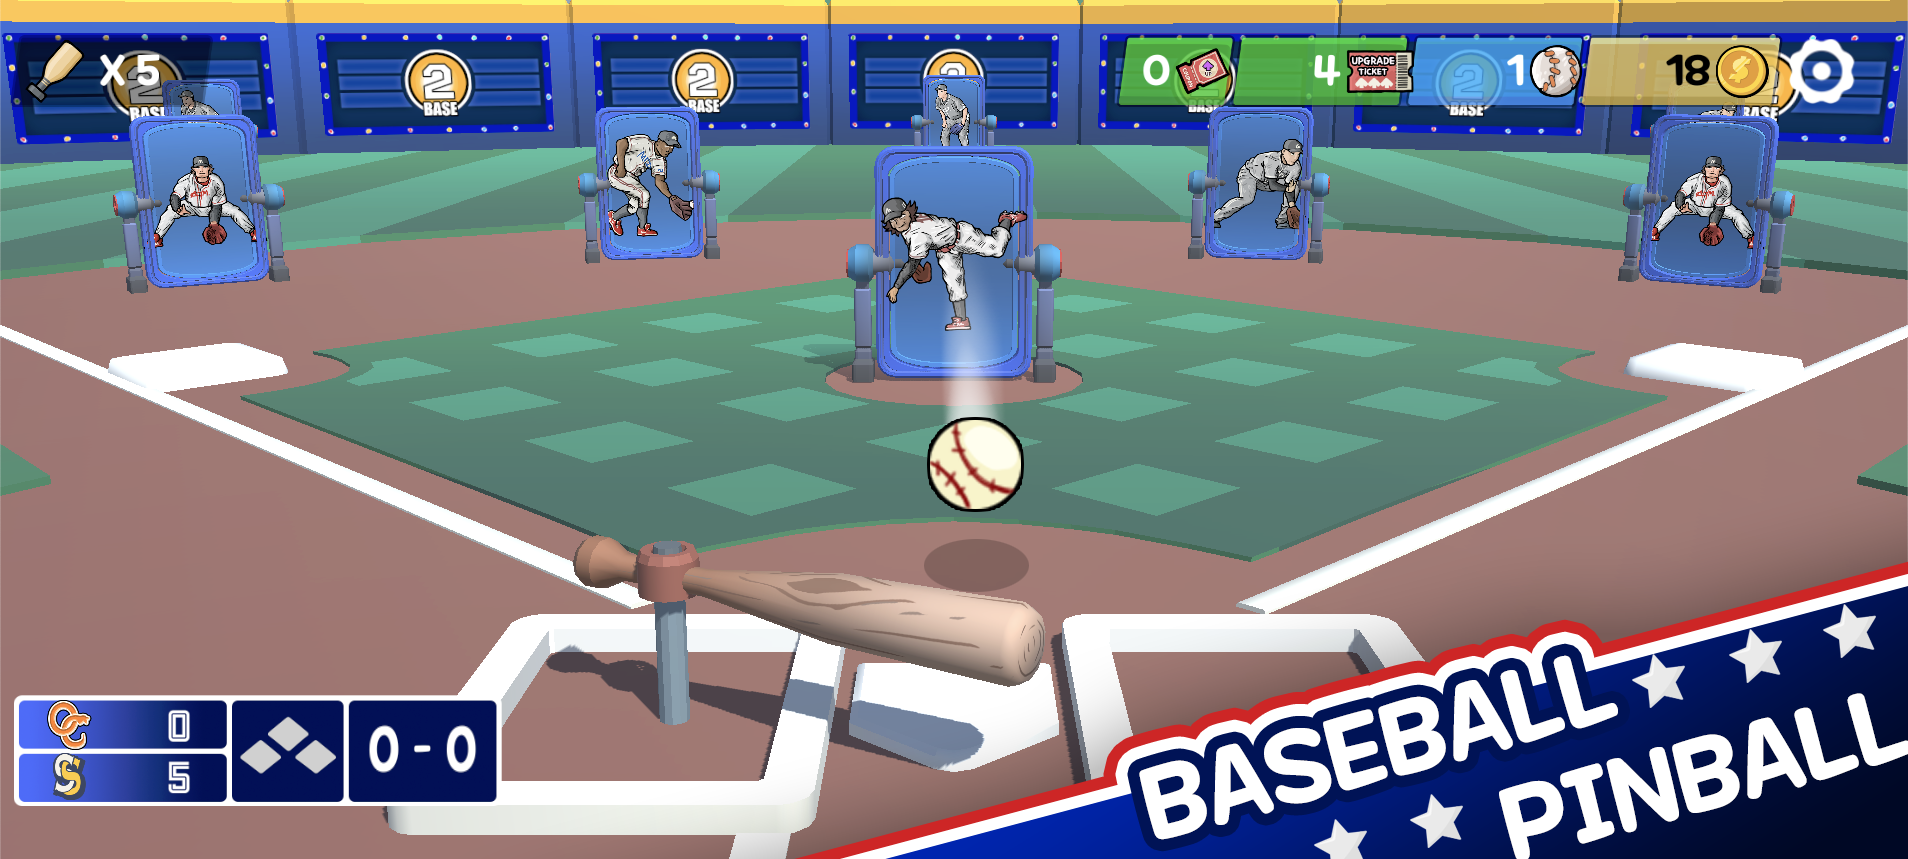 Pin baseball games - slugger遊戲截圖